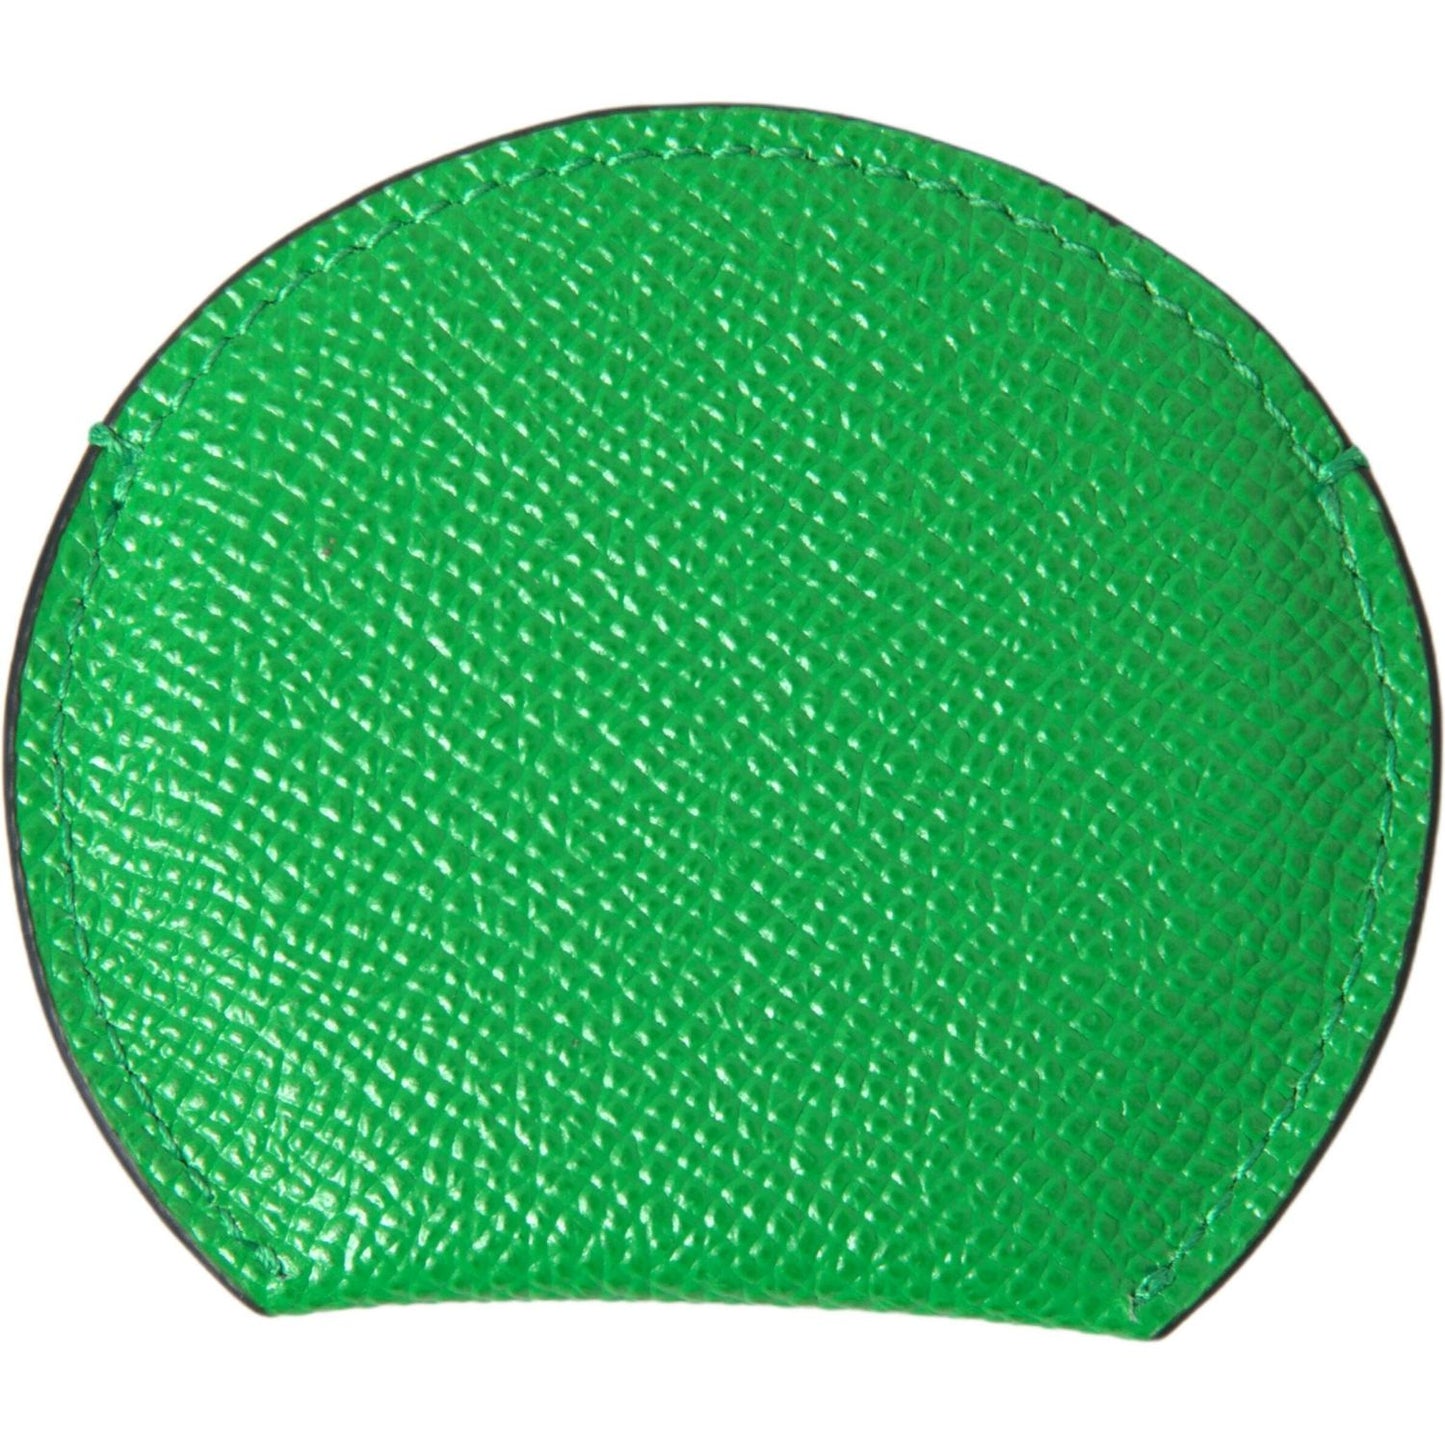 Dolce & Gabbana Elegant Calfskin Leather Mirror Holder green-calfskin-leather-round-logo-hand-mirror-holder